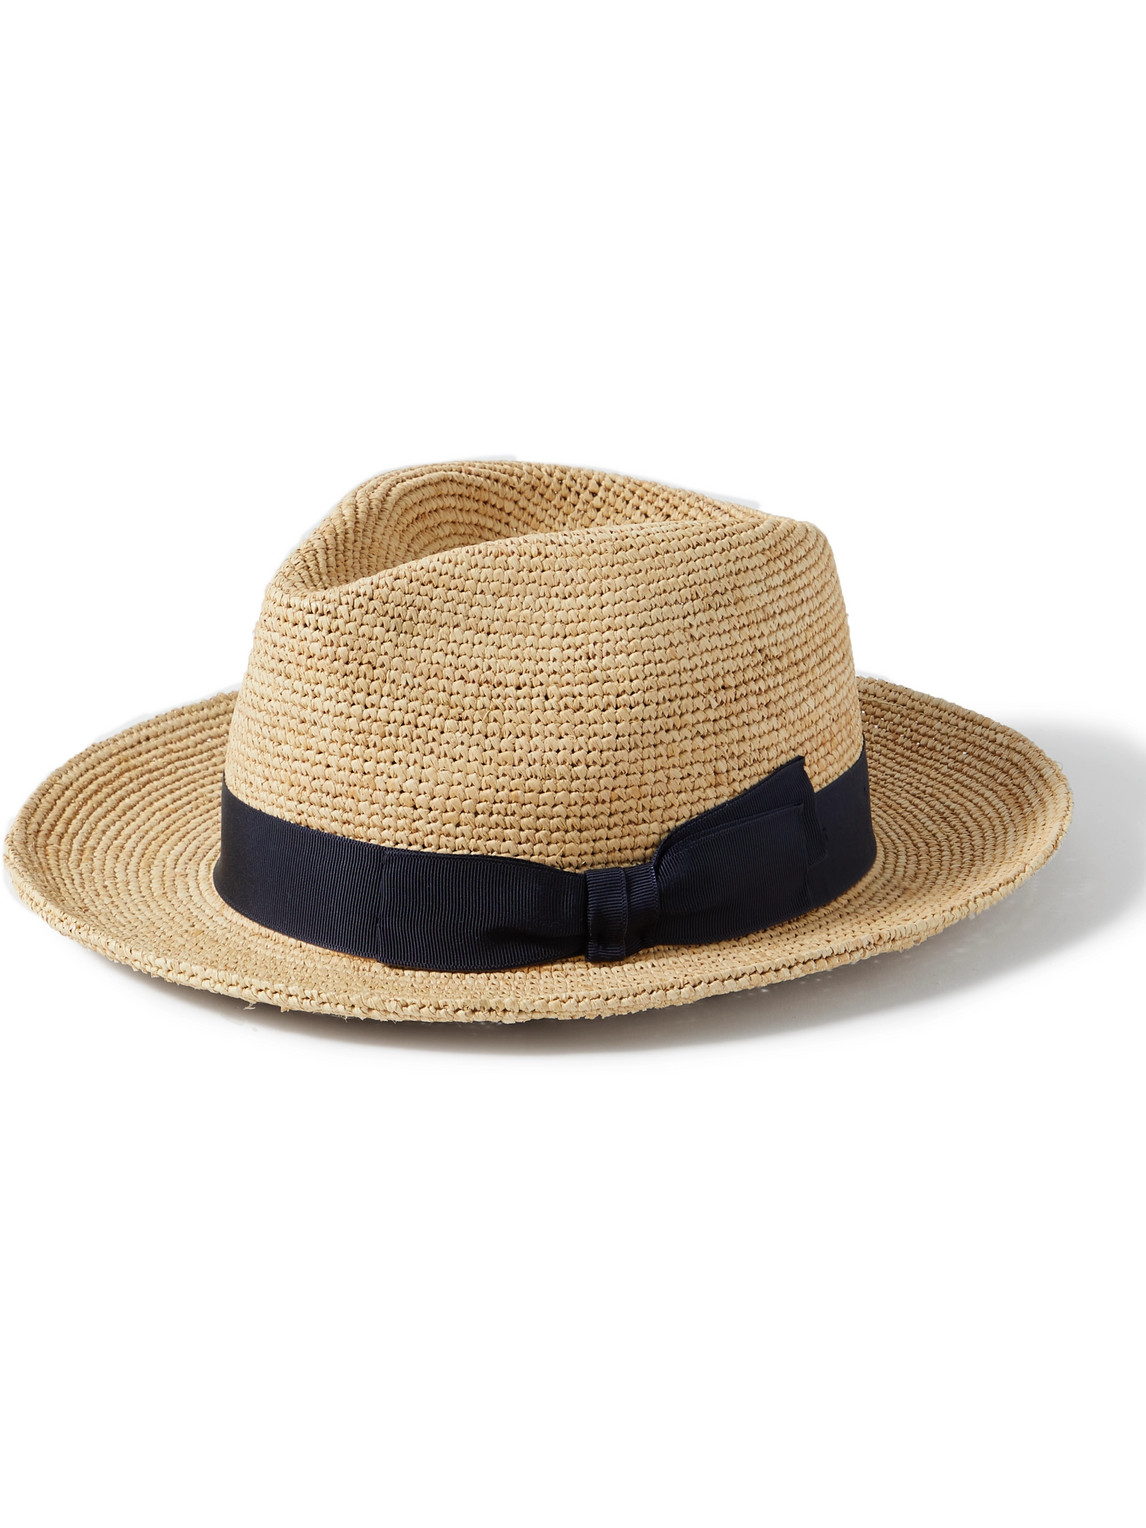 Lock & Co Hatters St. Louis Grosgrain-trimmed Straw Panama Hat In Neutrals